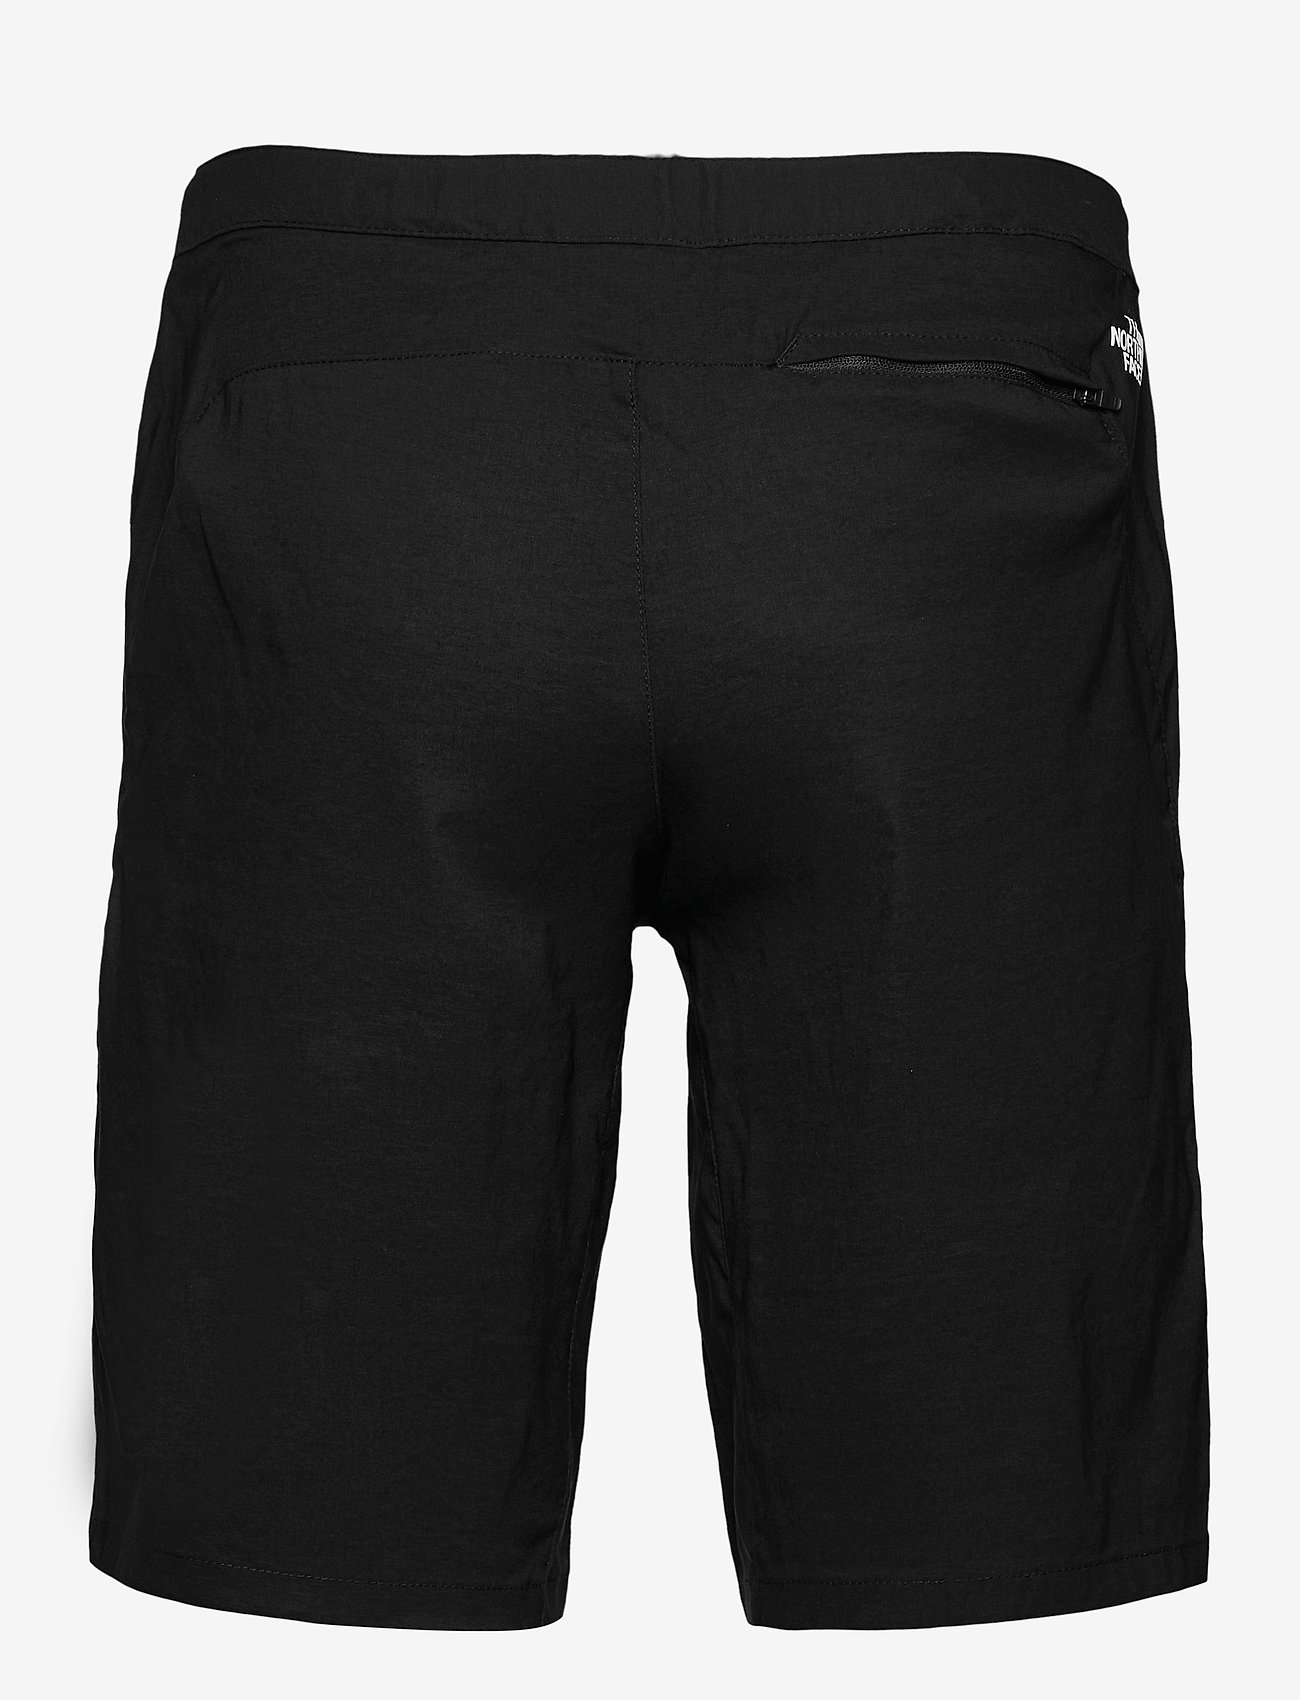 The North Face - M LIGHTNING SHORT - EU - chemises basiques - tnf black - 1